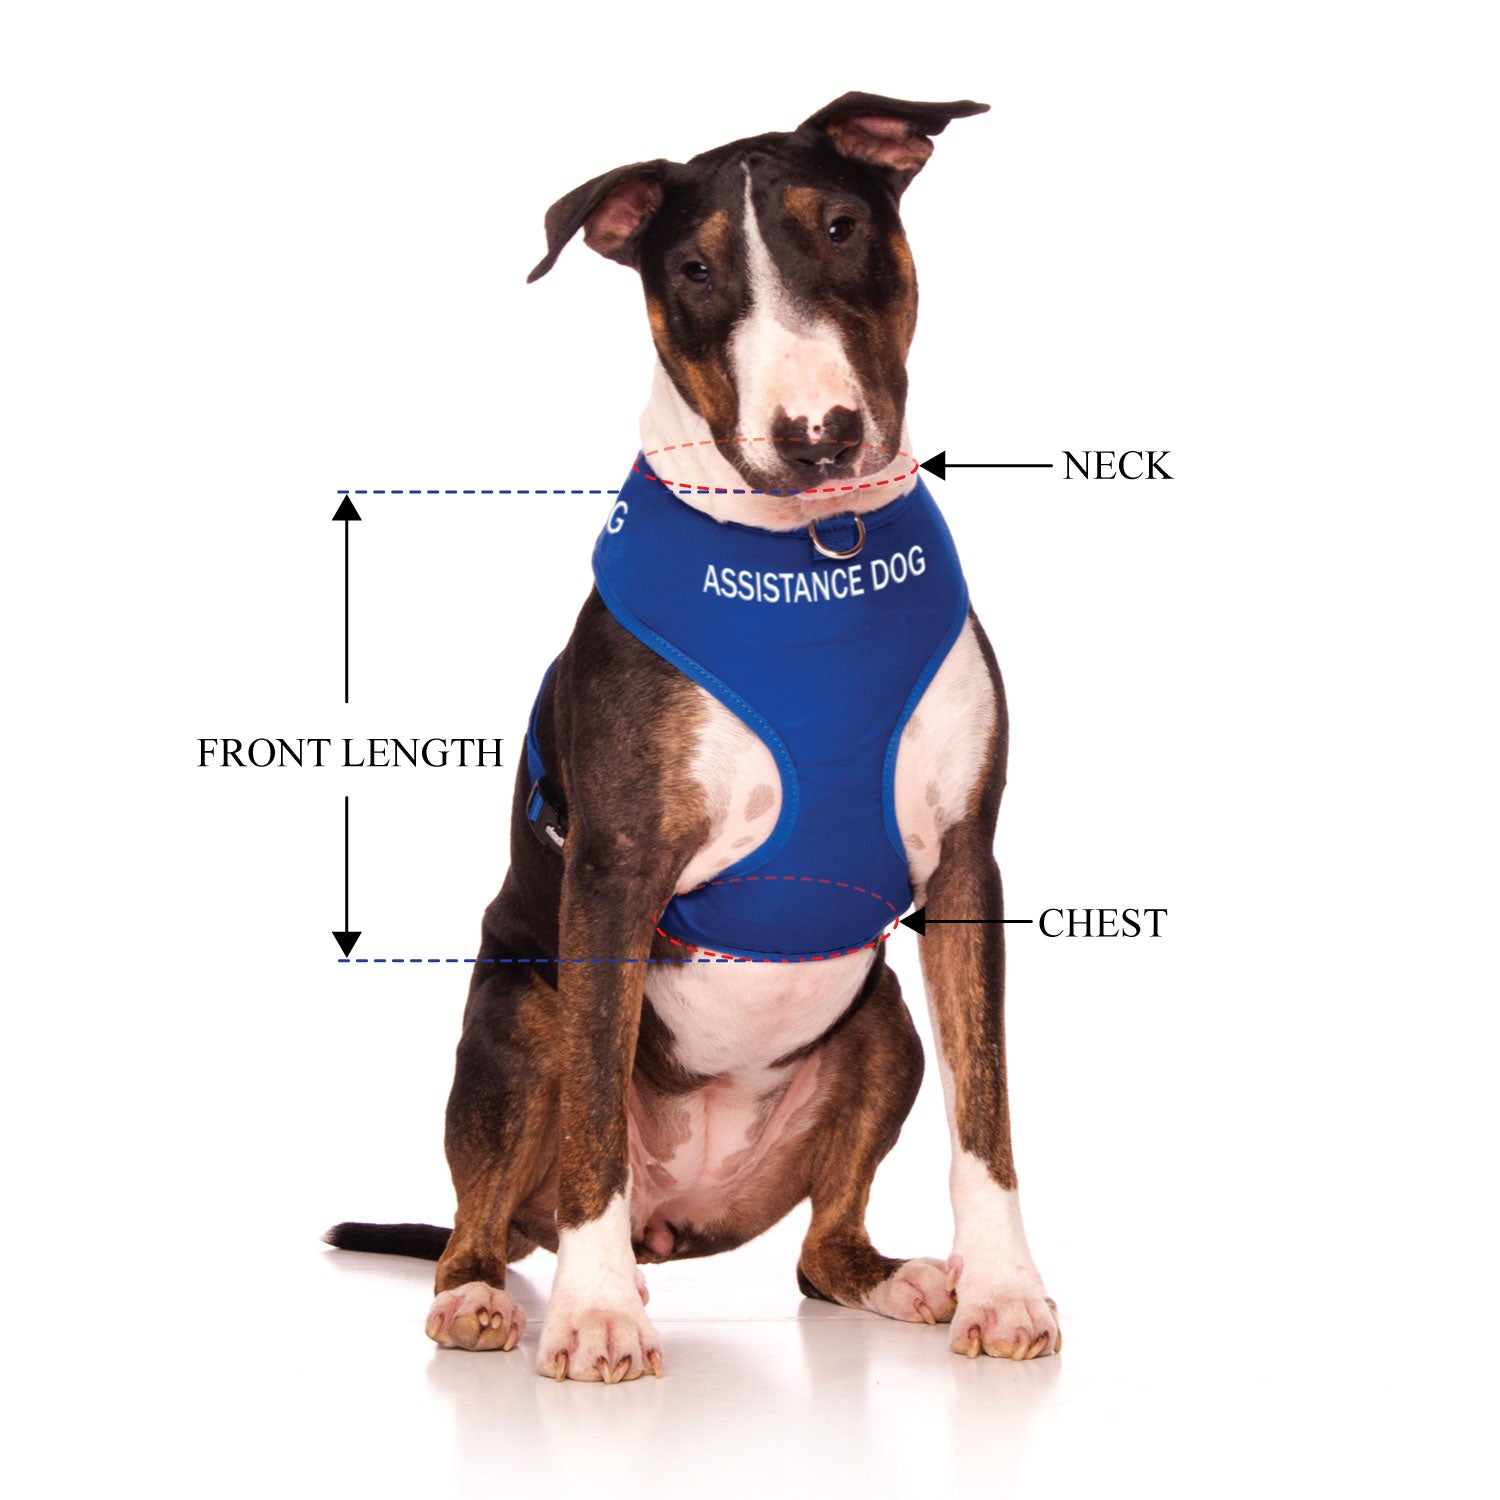 ASSISTANCE DOG - Large adjustable Vest Harness